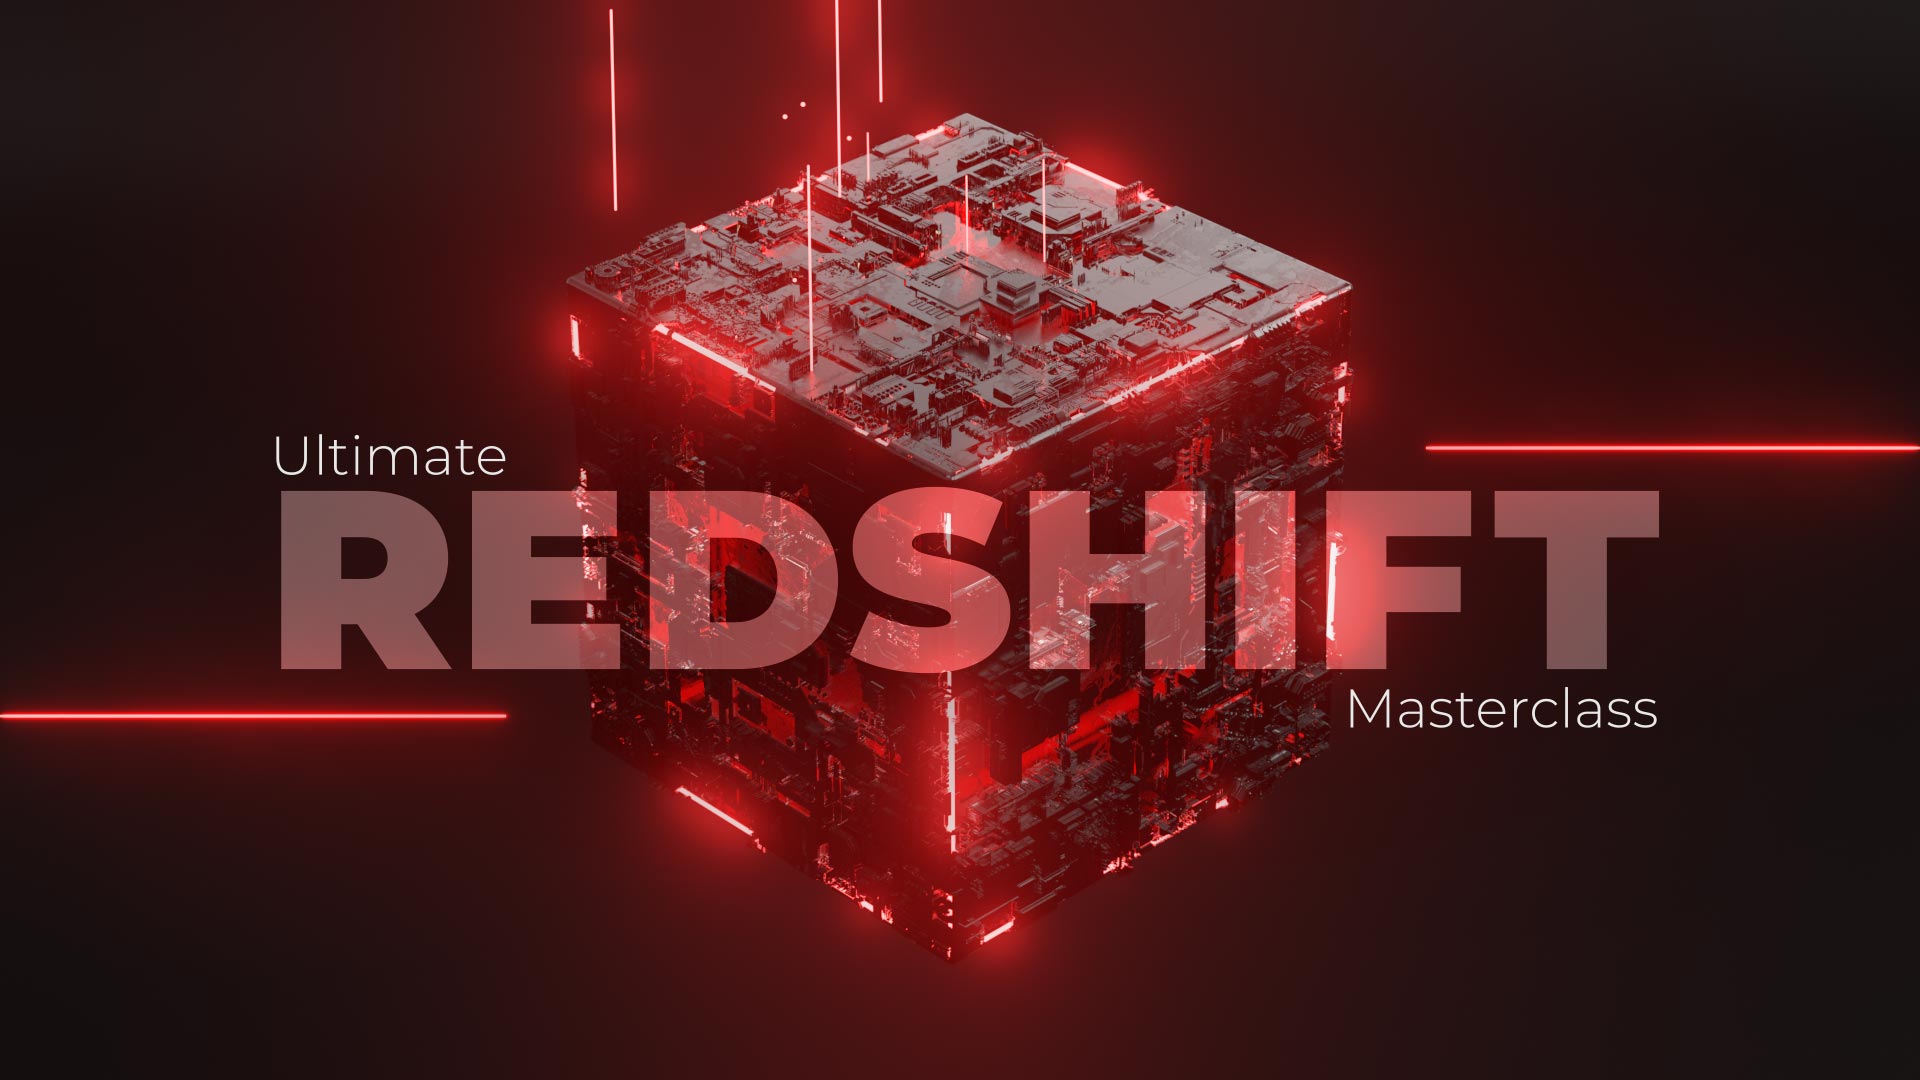 Ultimate Redshift Masterclass hd